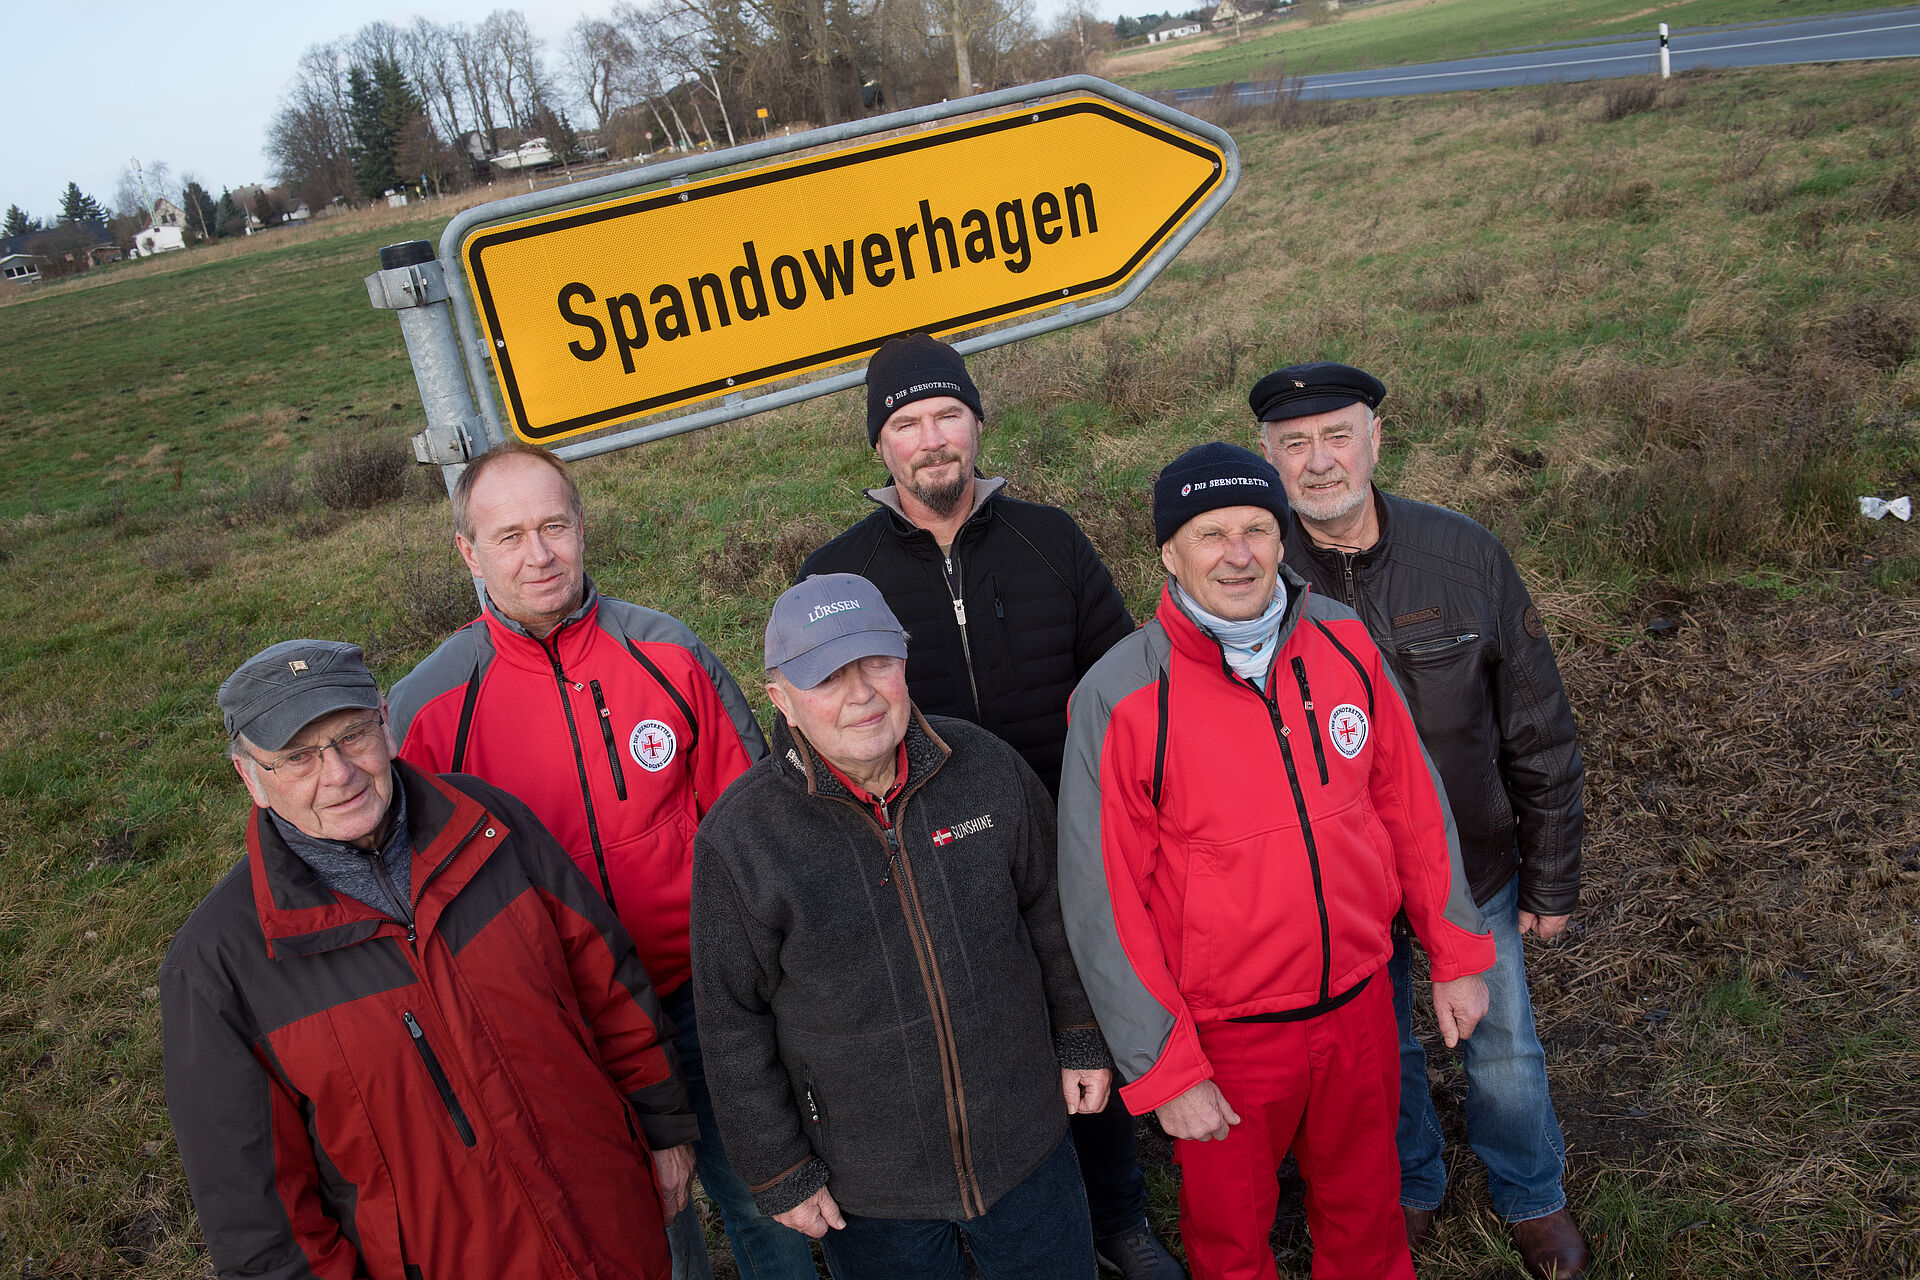 Eine Gruppe von 6 Männern steht vor dem gelben Verkehrschild mit der Aufschrift "Spandowerhagen". Zwei der Männer tragen rote Seenotretter-Kleidung.